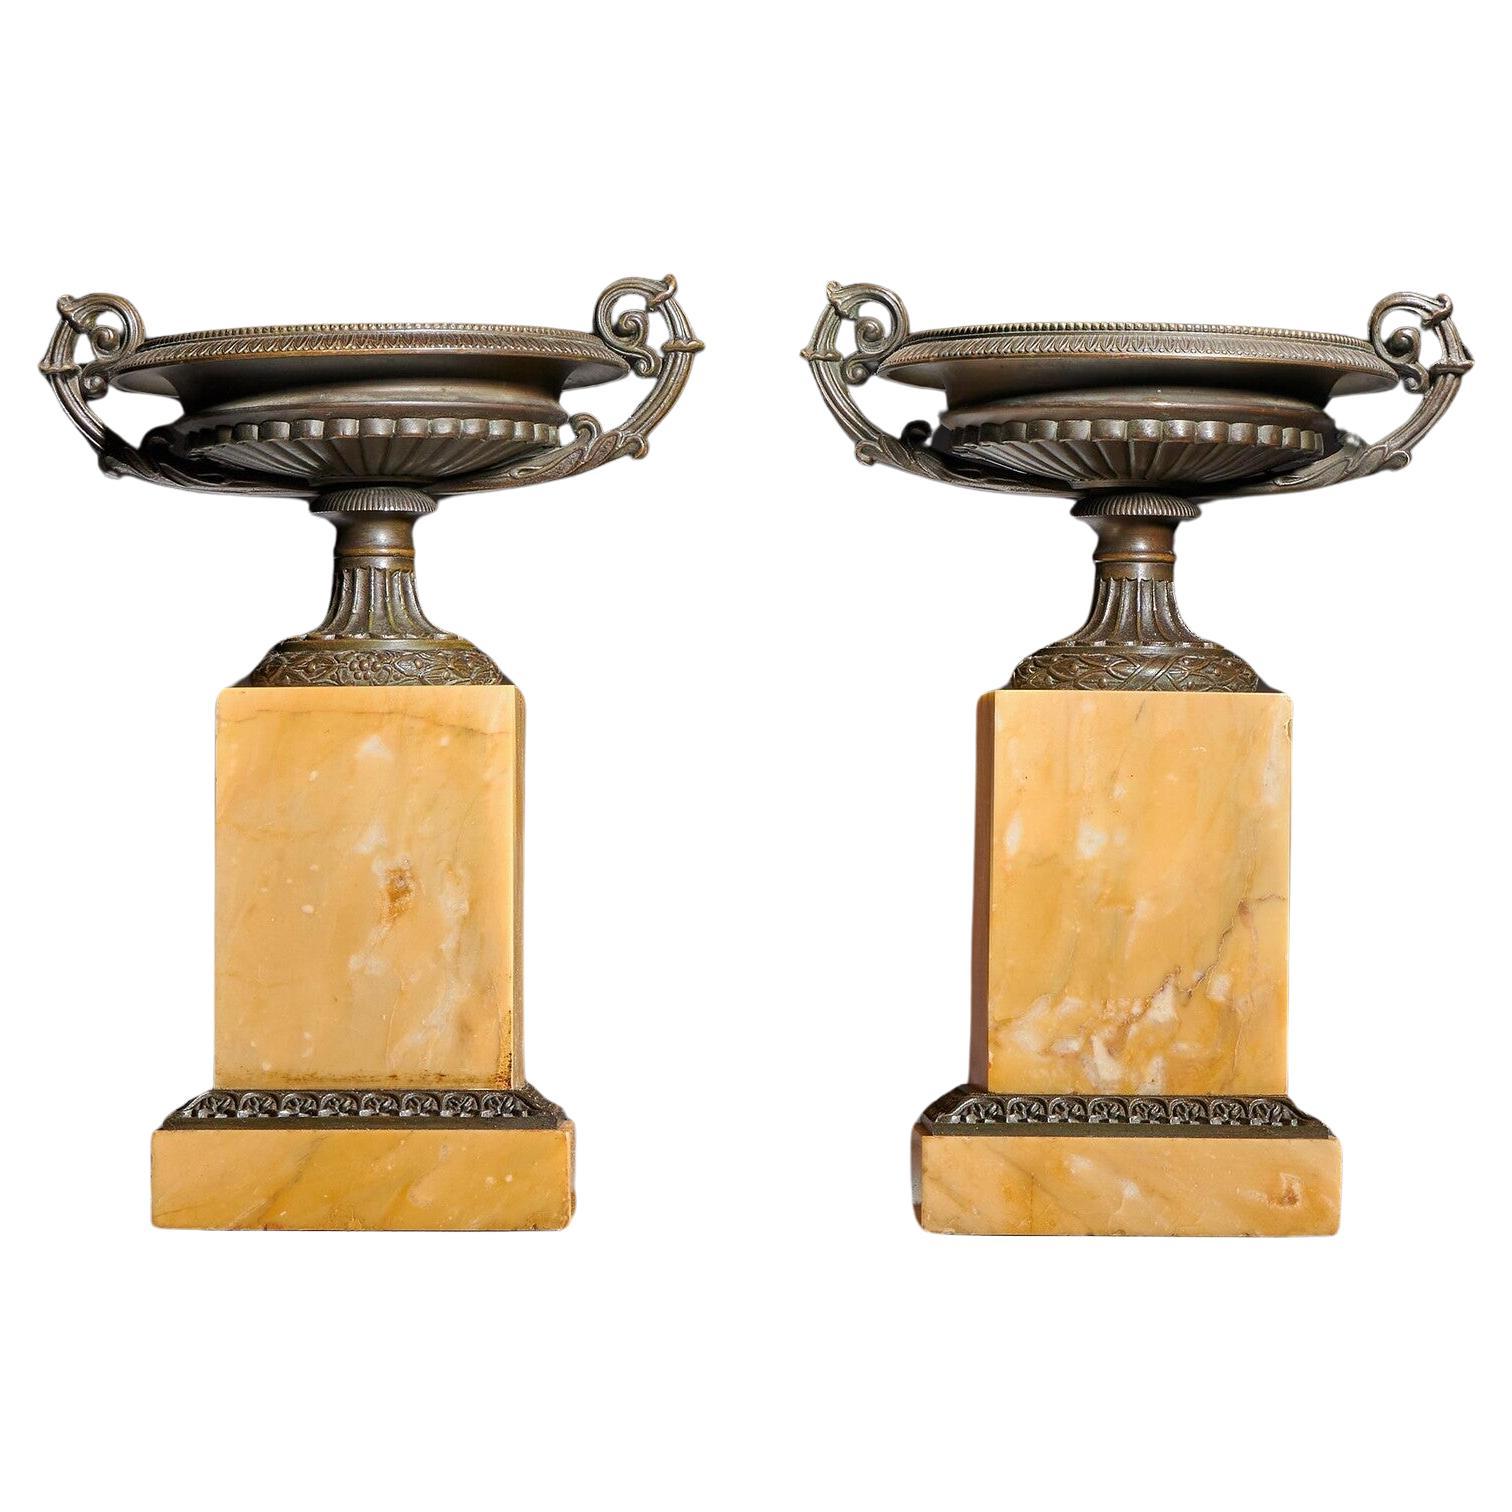 Paire de tazzas en bronze et en marbre de Sienne du début du XIXe siècle, datant du Grand Tour de France